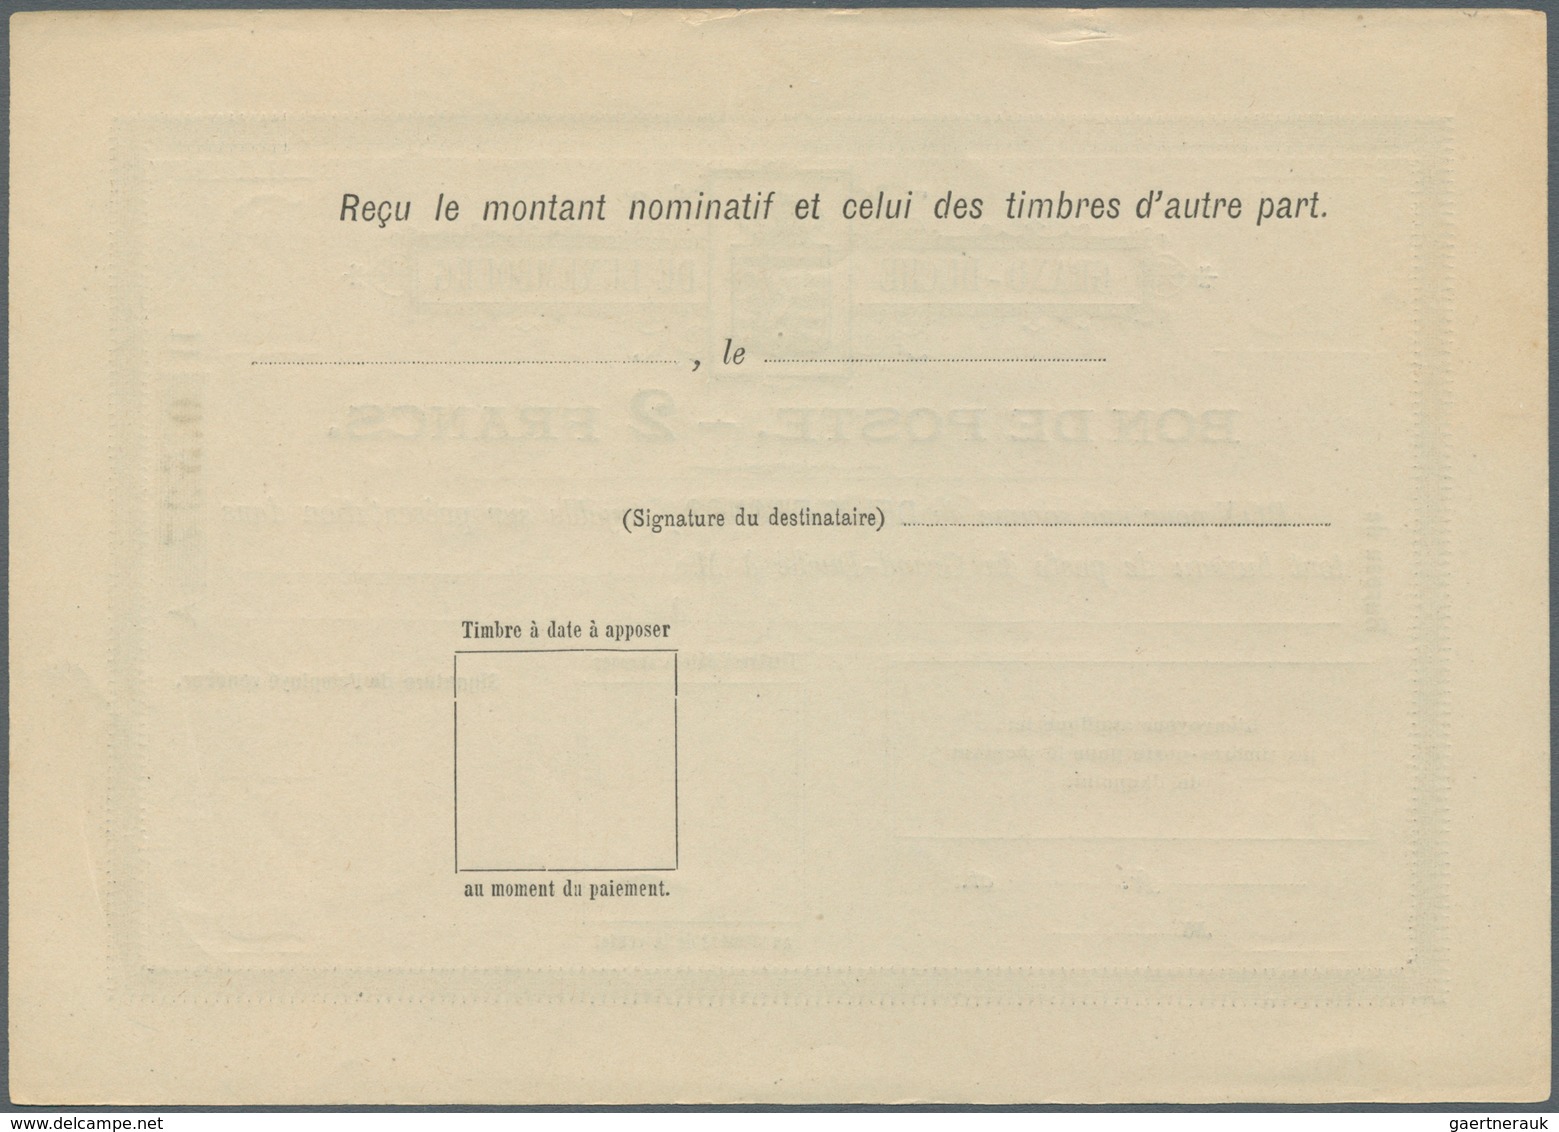 Luxemburg - Ganzsachen: 1884, 1 fr. - 10 fr. Bon de Poste, complete set with ten pieces, unused, mos